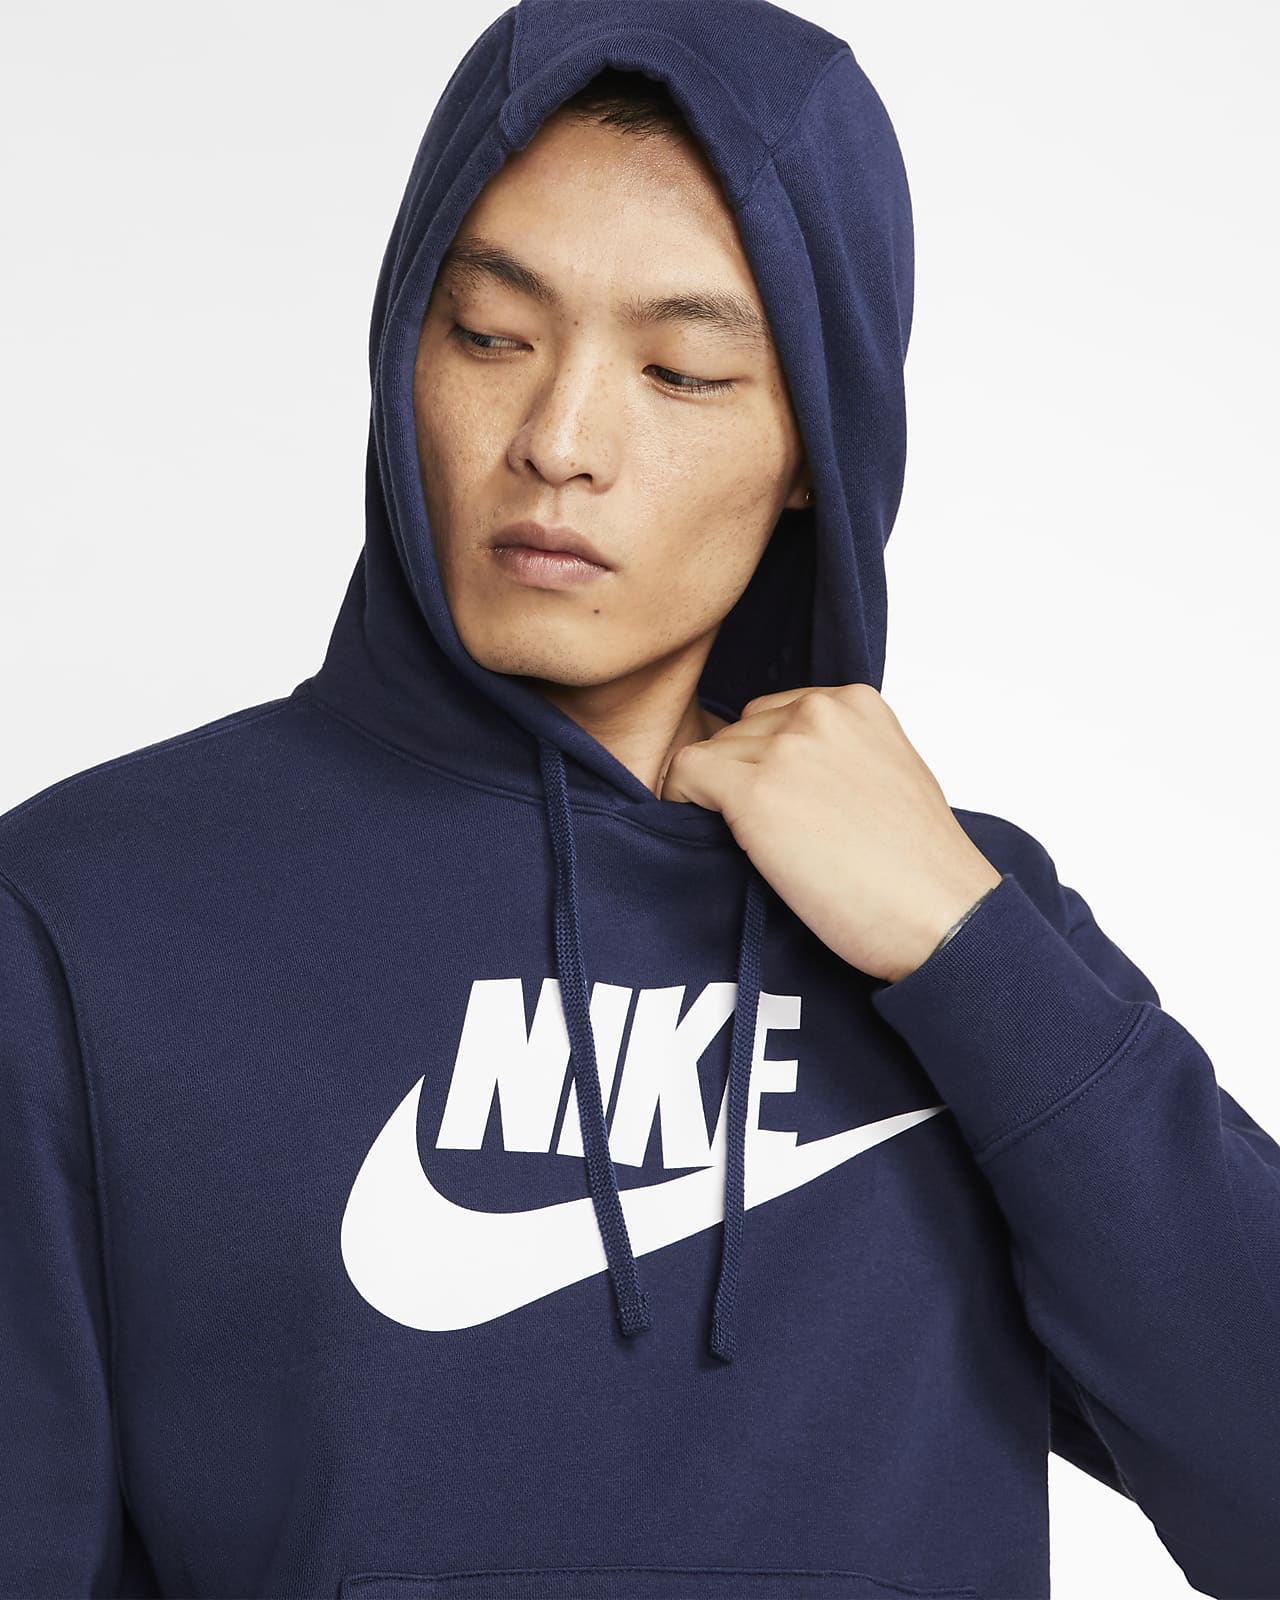 men's graphic pullover hoodie nike sportswear club fleece